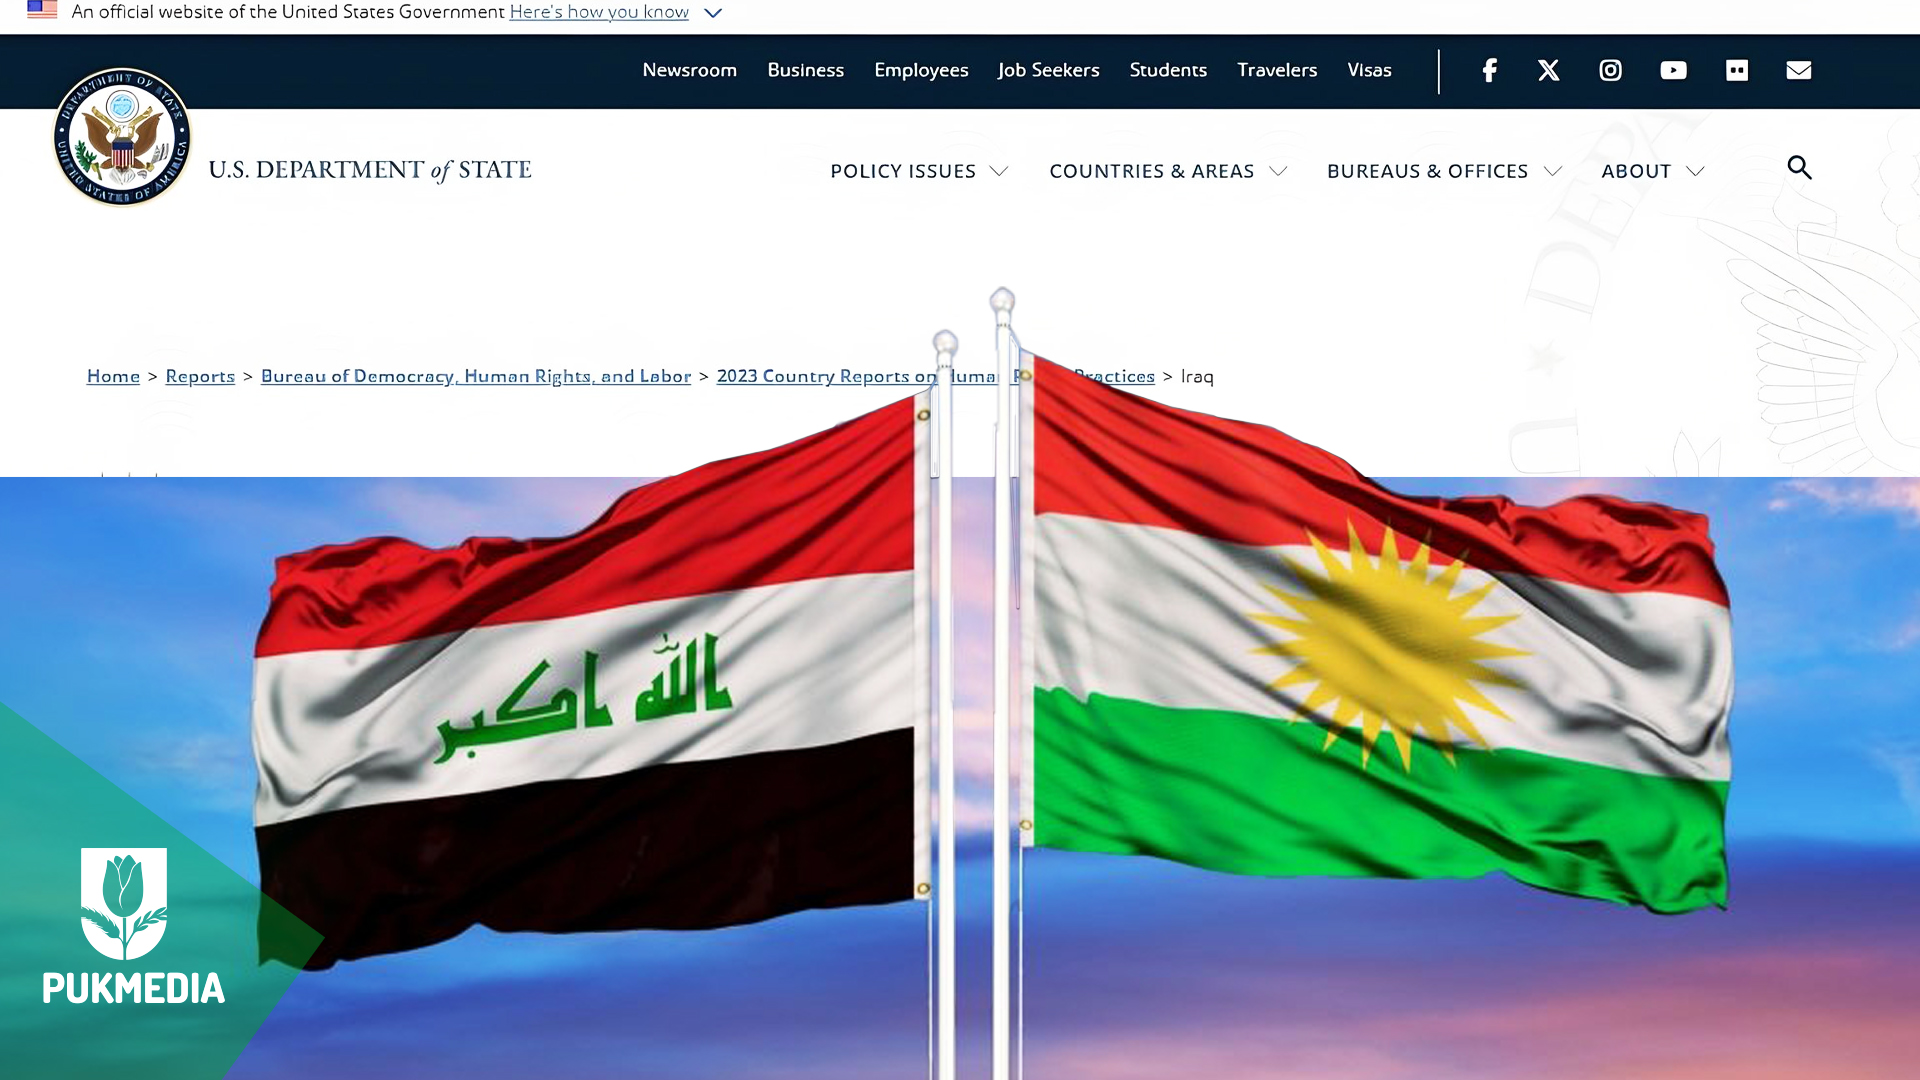  Iraqi & Kurdish flags